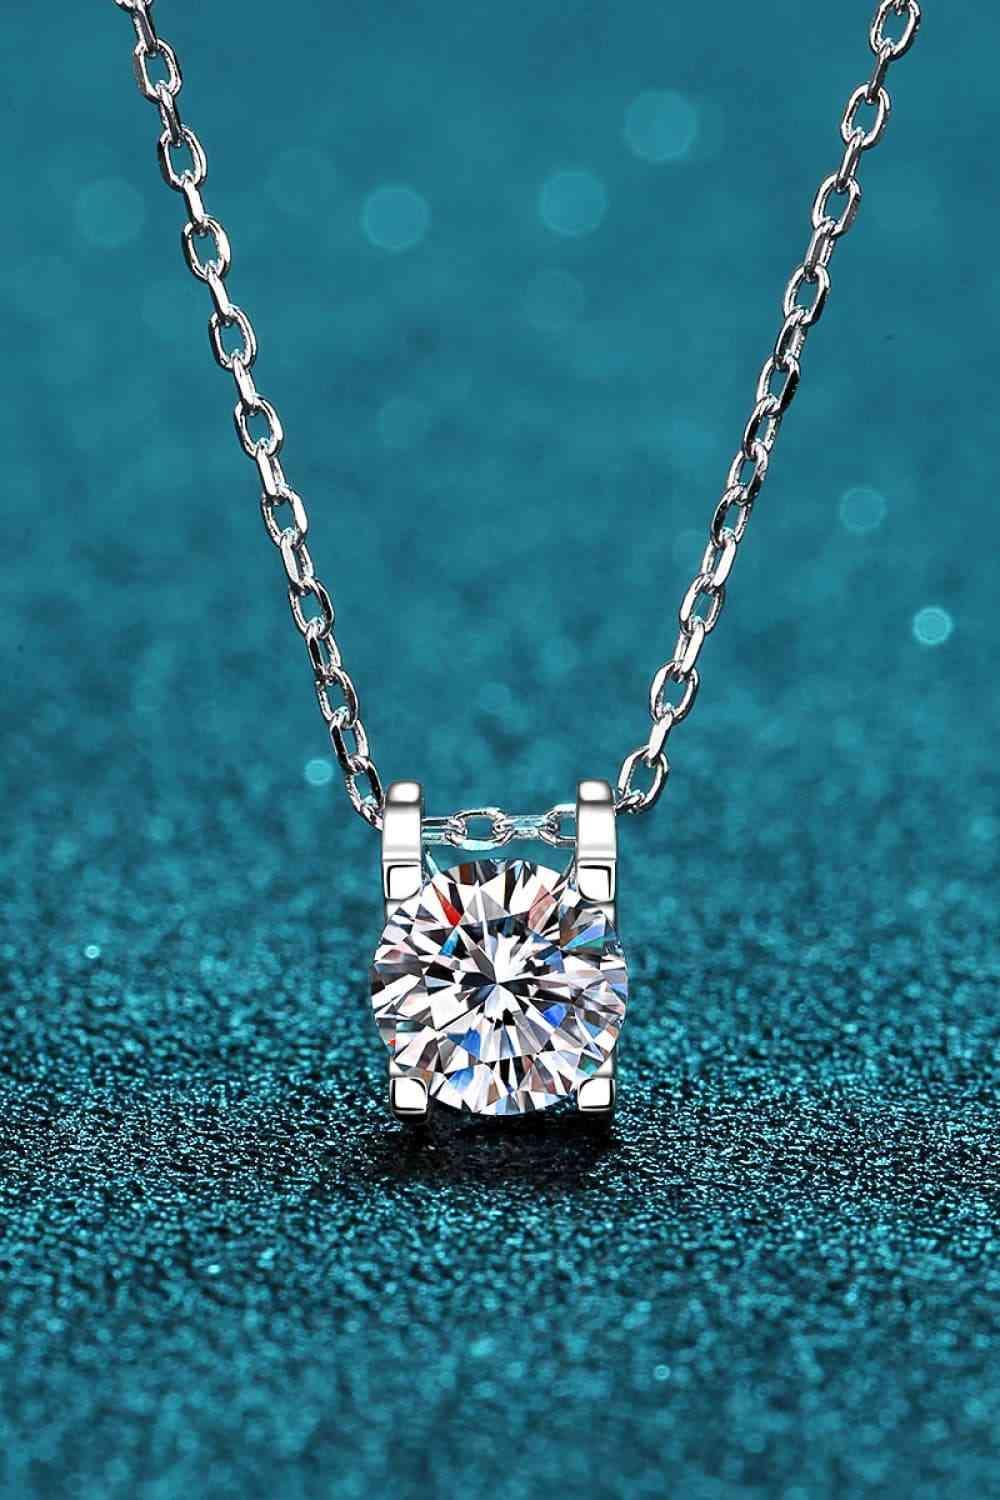 a diamond necklace on a blue background